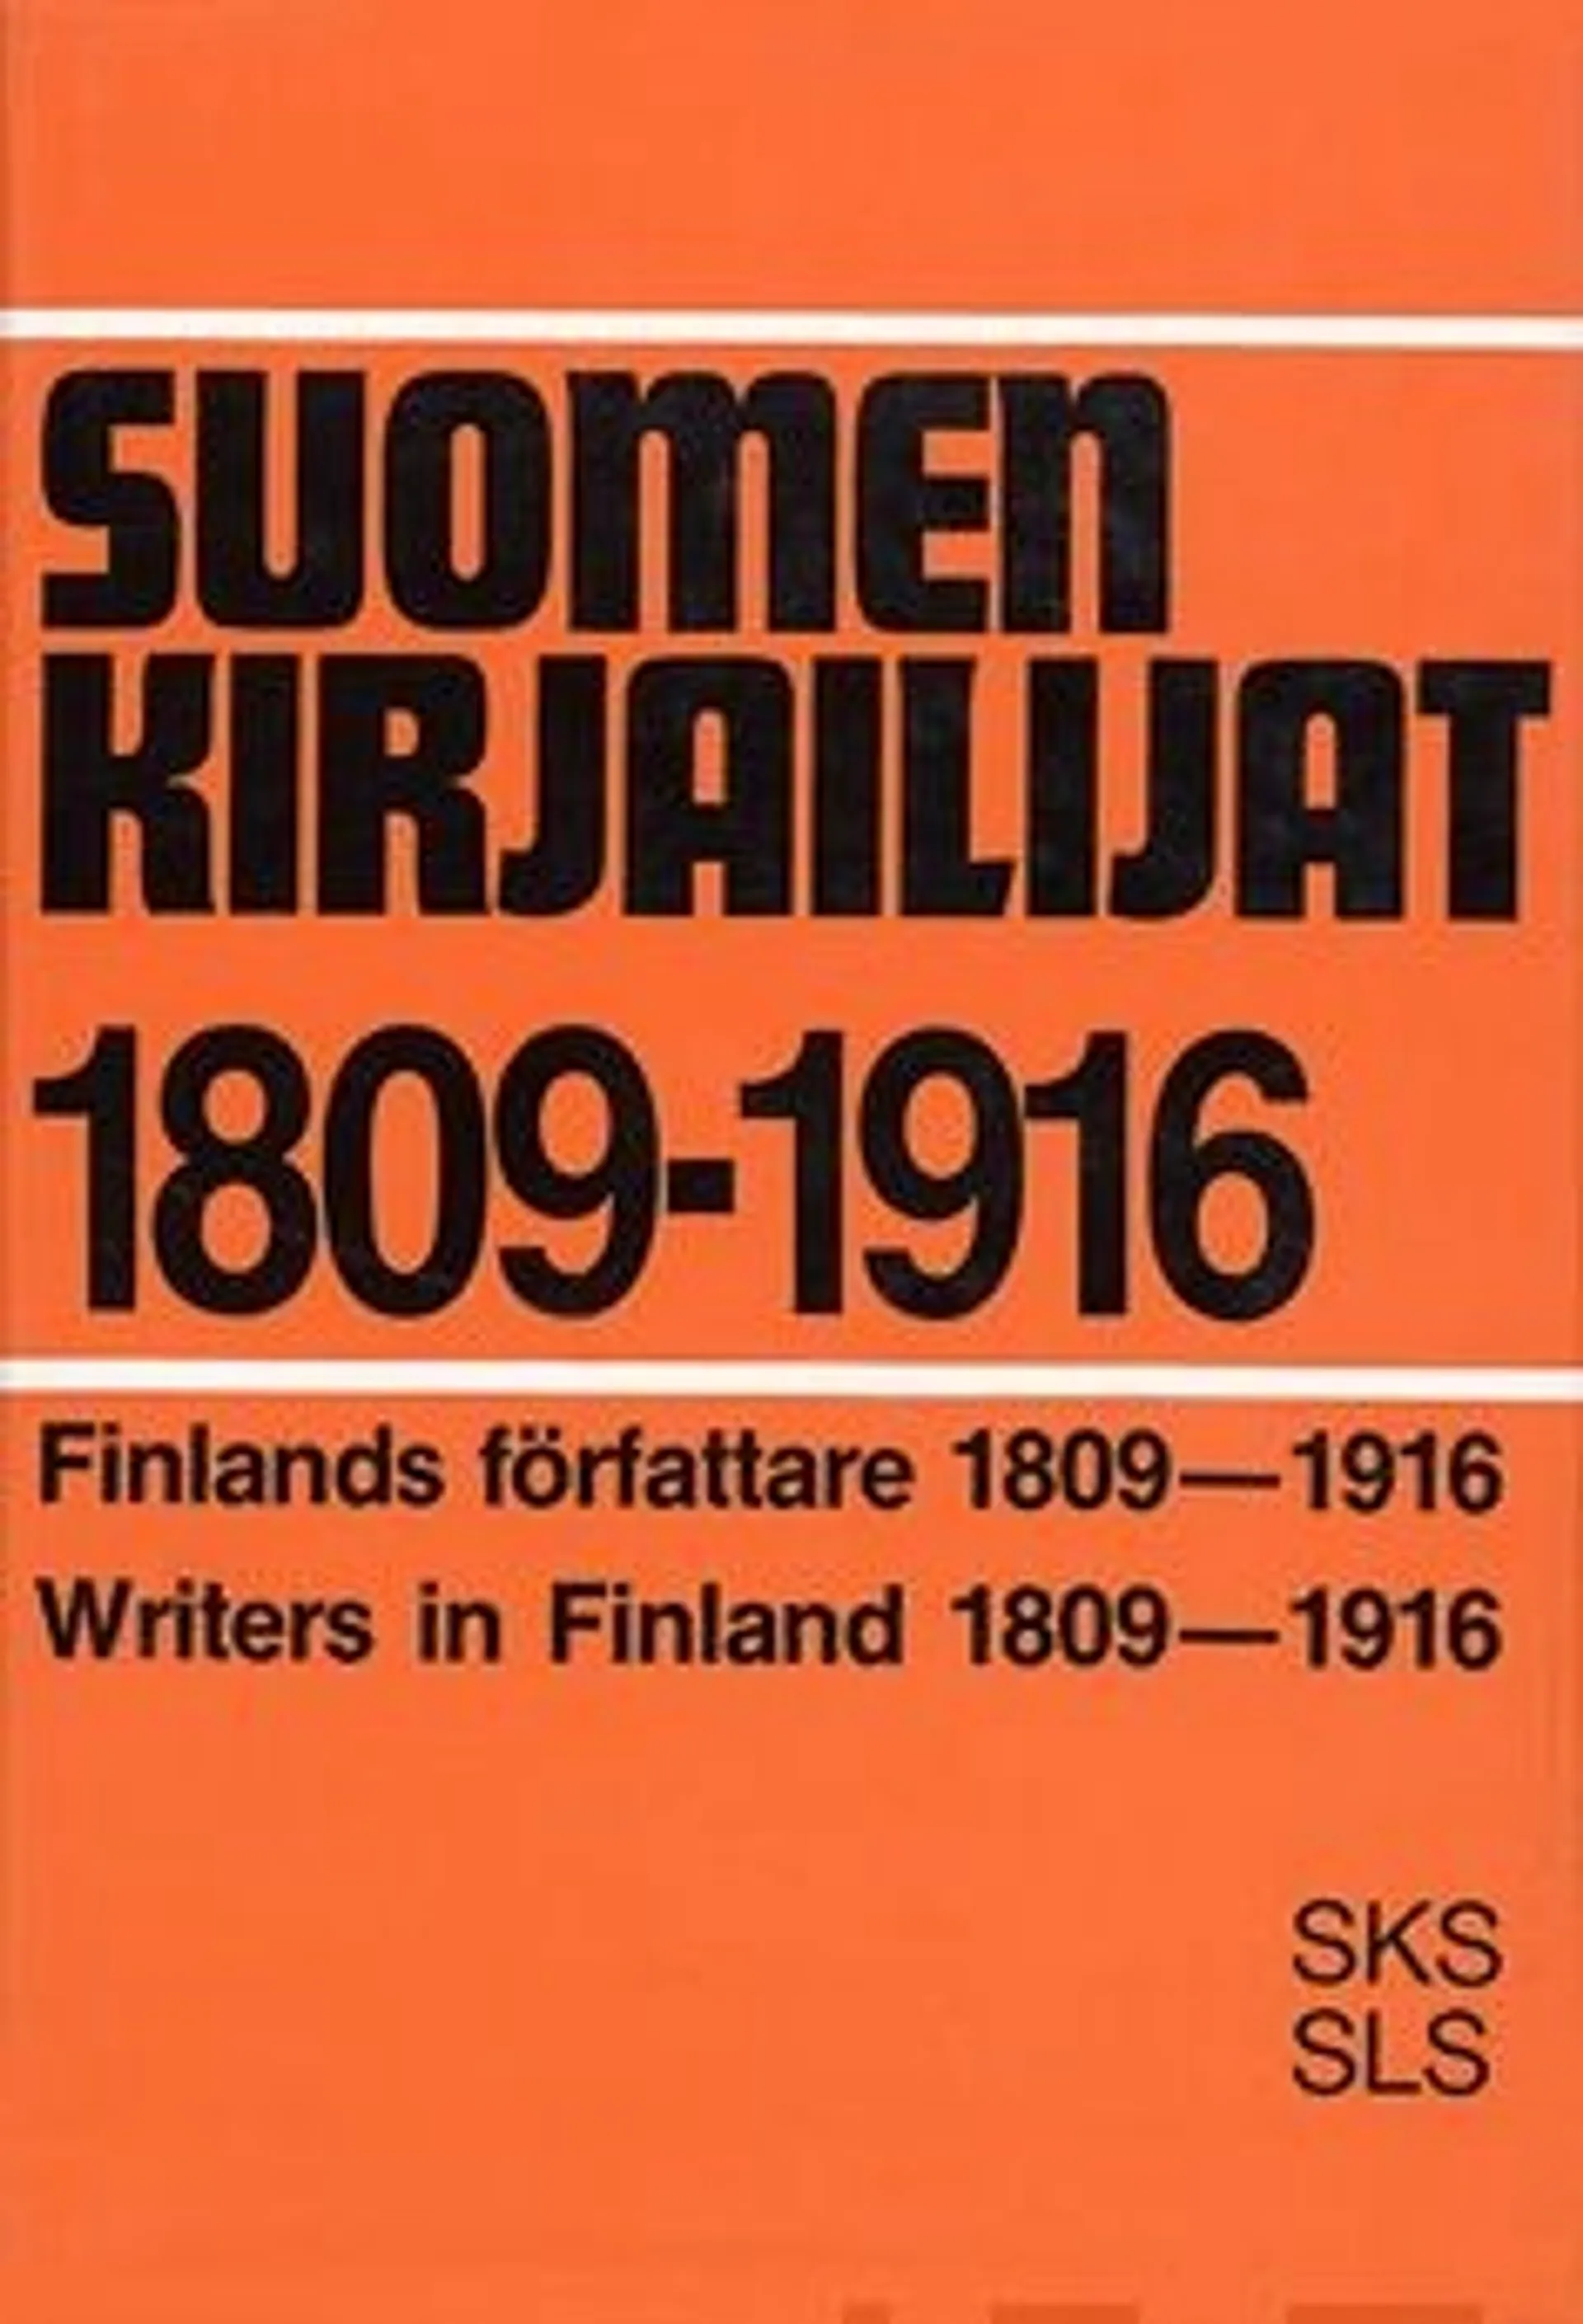 Hirvonen, Suomen kirjailijat 1809-1916